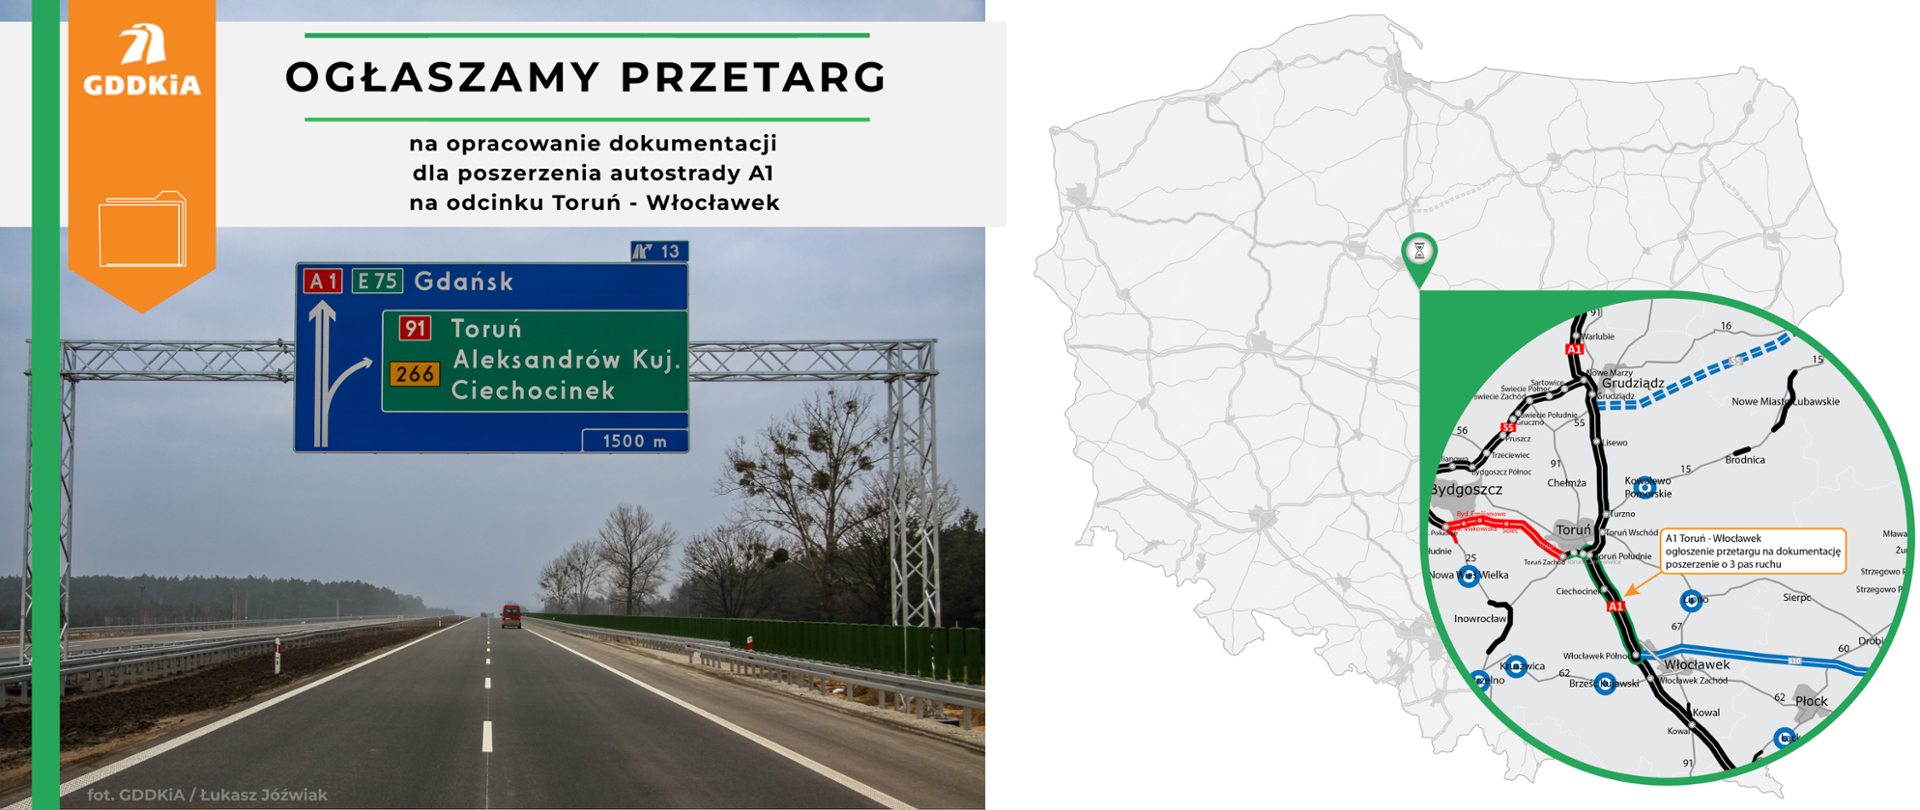 Ogłaszamy przetarg na opracowanie dokumentacji dla poszerzenia odcinka Autostrady A1 na odcinku Toruń - Włocławek